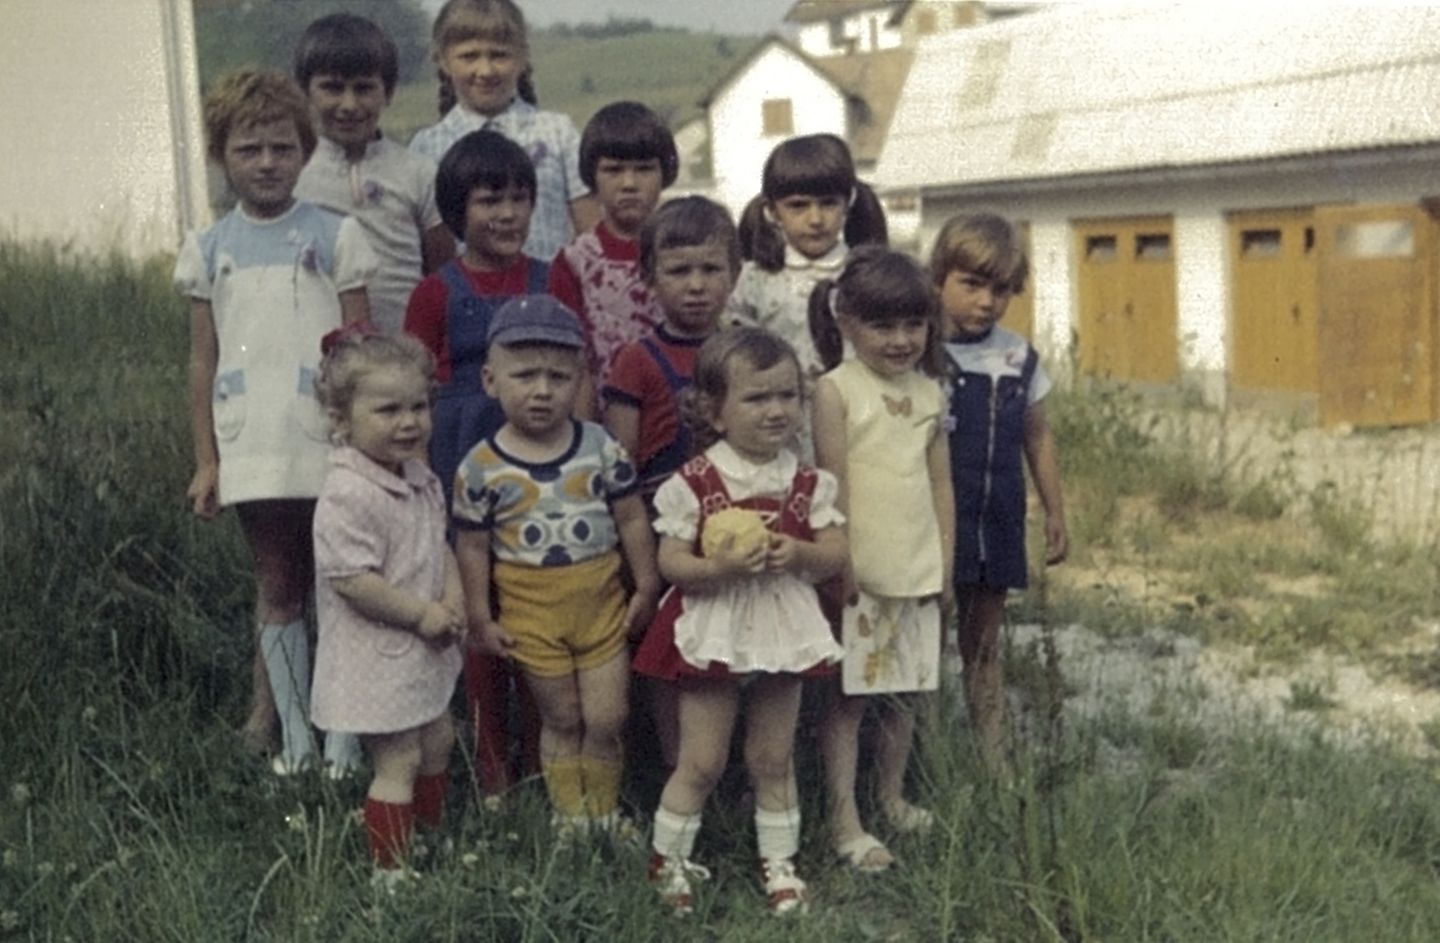 Melania Trump, damals noch unter dem Namen Melanija Knavs (zweites Kind v. r.) posiert für ein Gruppenfoto während eines Kindergeburtstages in Sevnica, Slowenien.